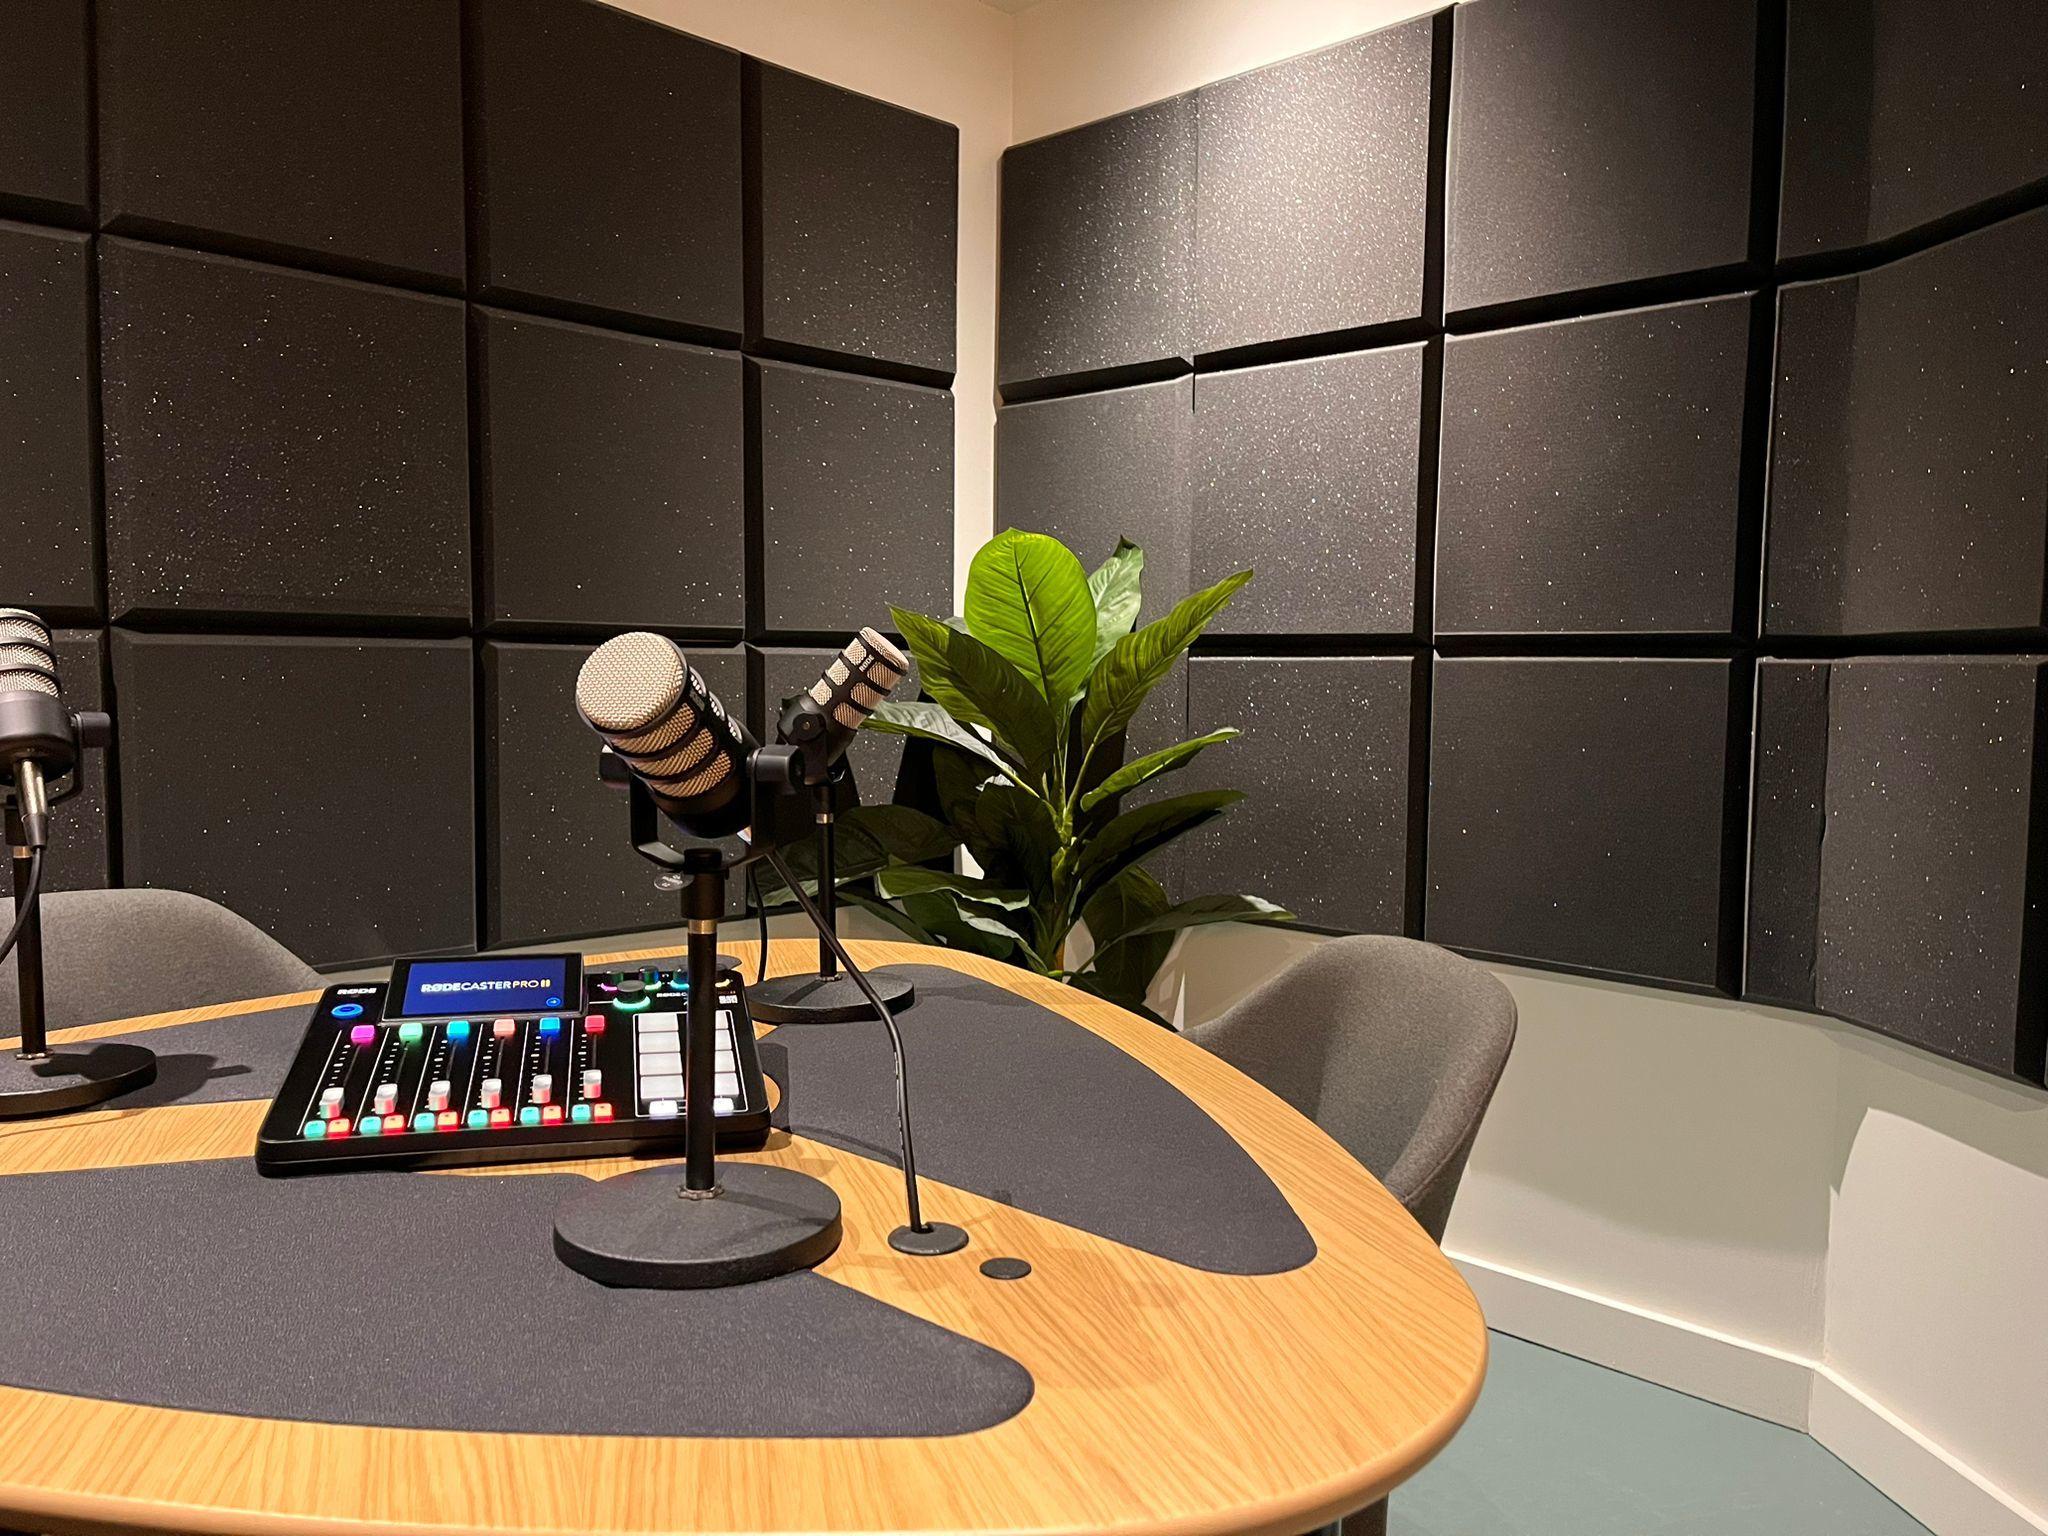 Podcast Studio, Department Leeds Dock photo #1